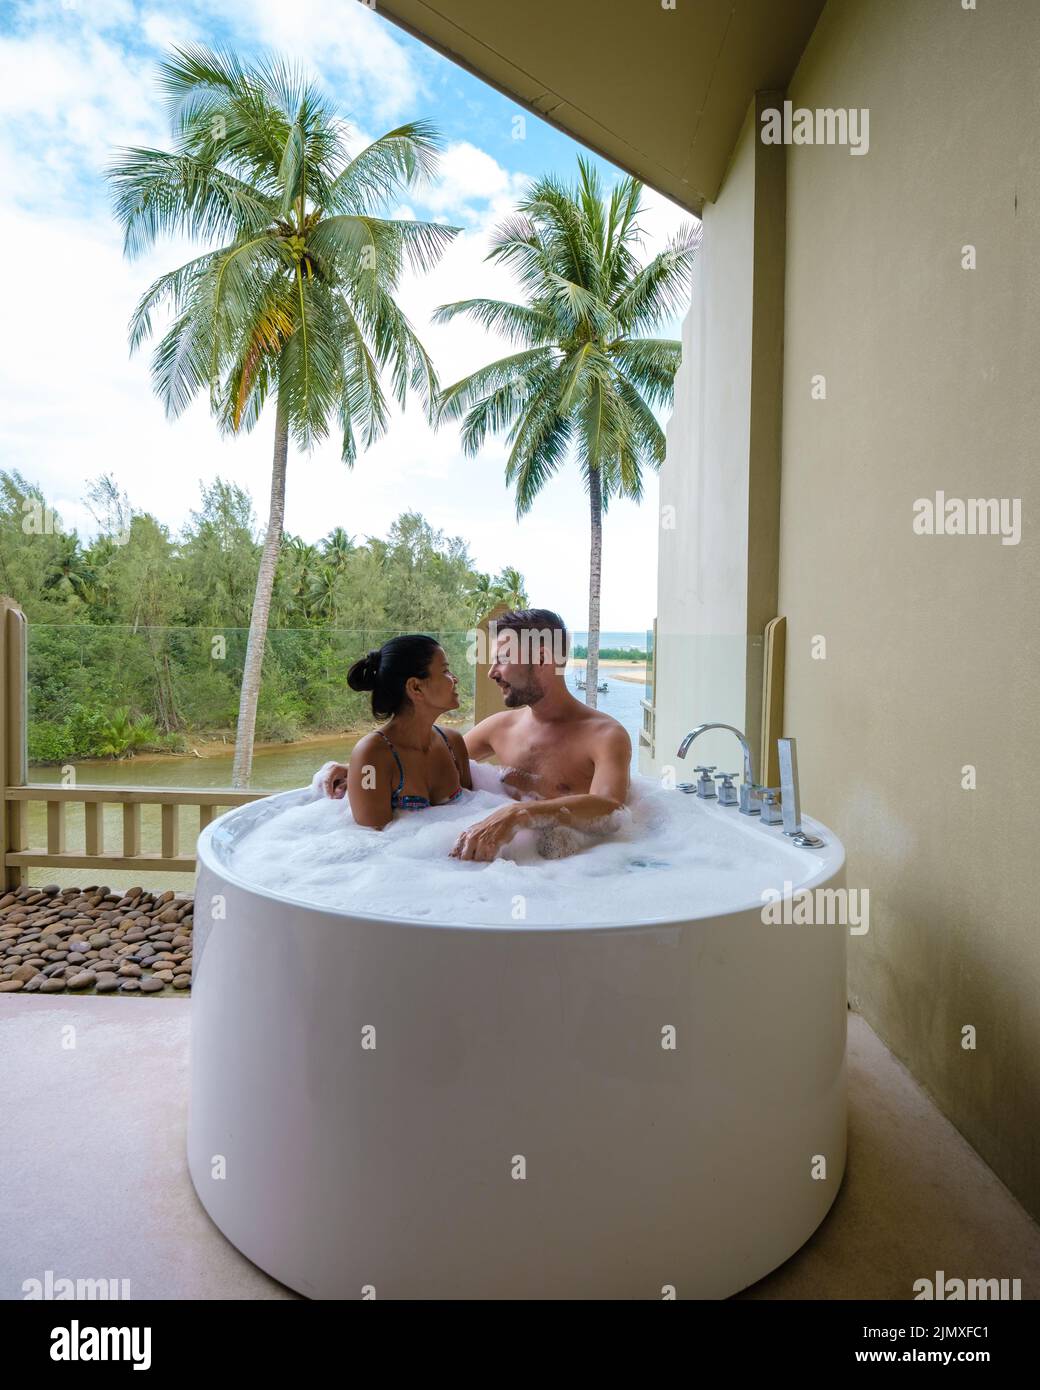 Romantica vasca da bagno con petali di rosa, vacanza di lusso nella vasca idromassaggio, coppia uomini e donne in bagno Foto Stock